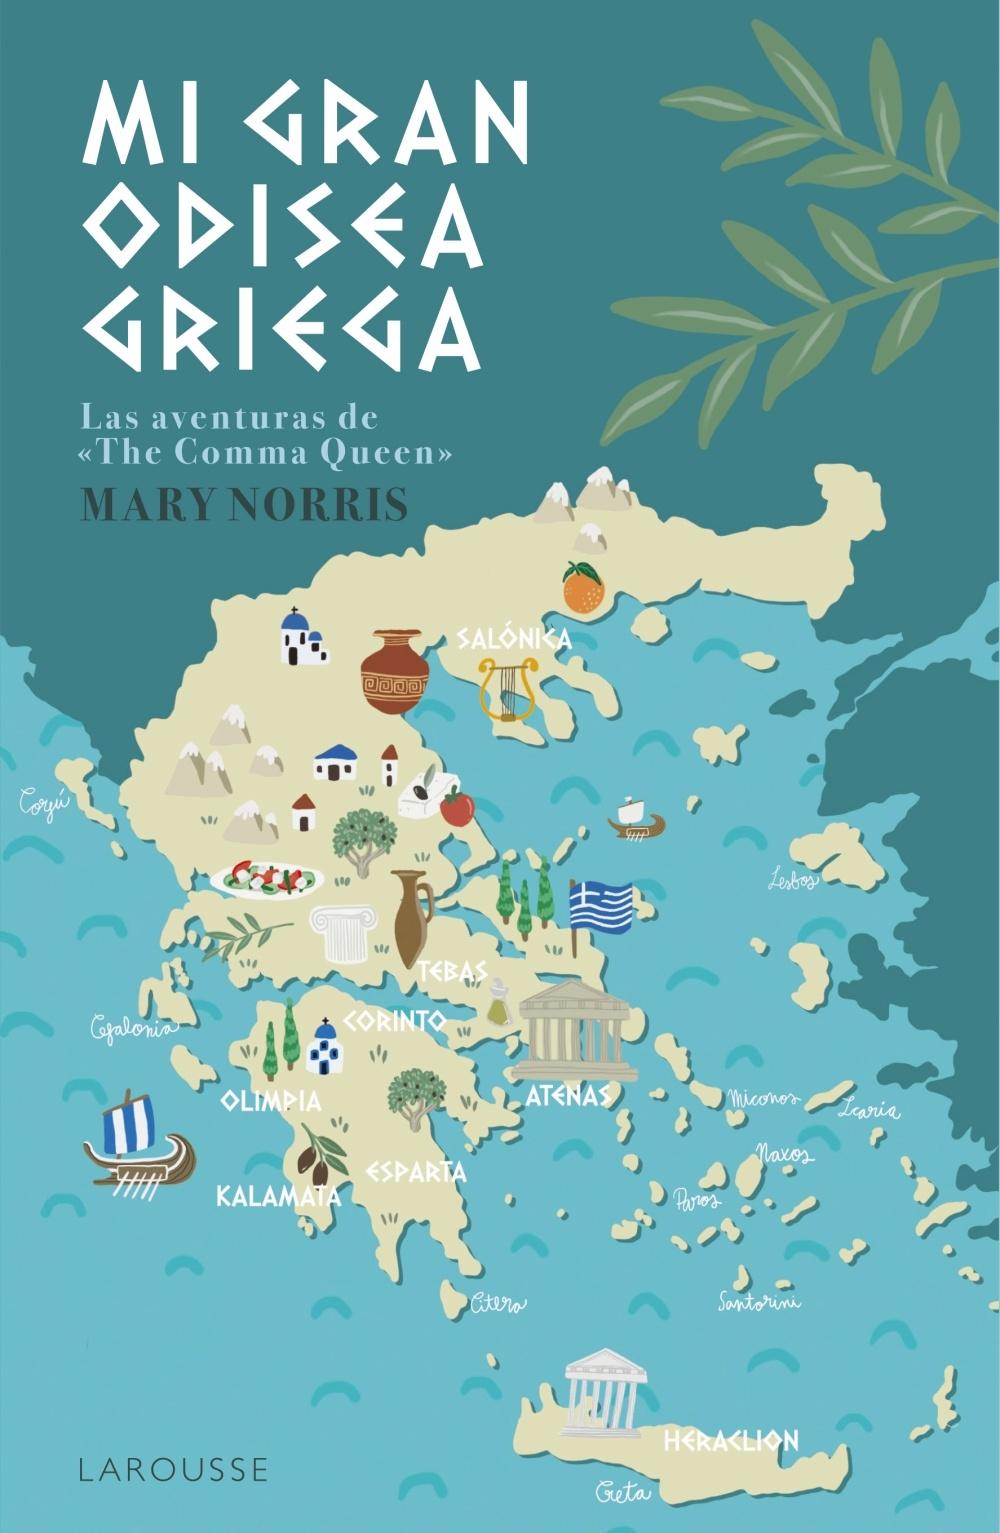 Mi gran odisea griega "La aventura de 'The Comma Queen'"